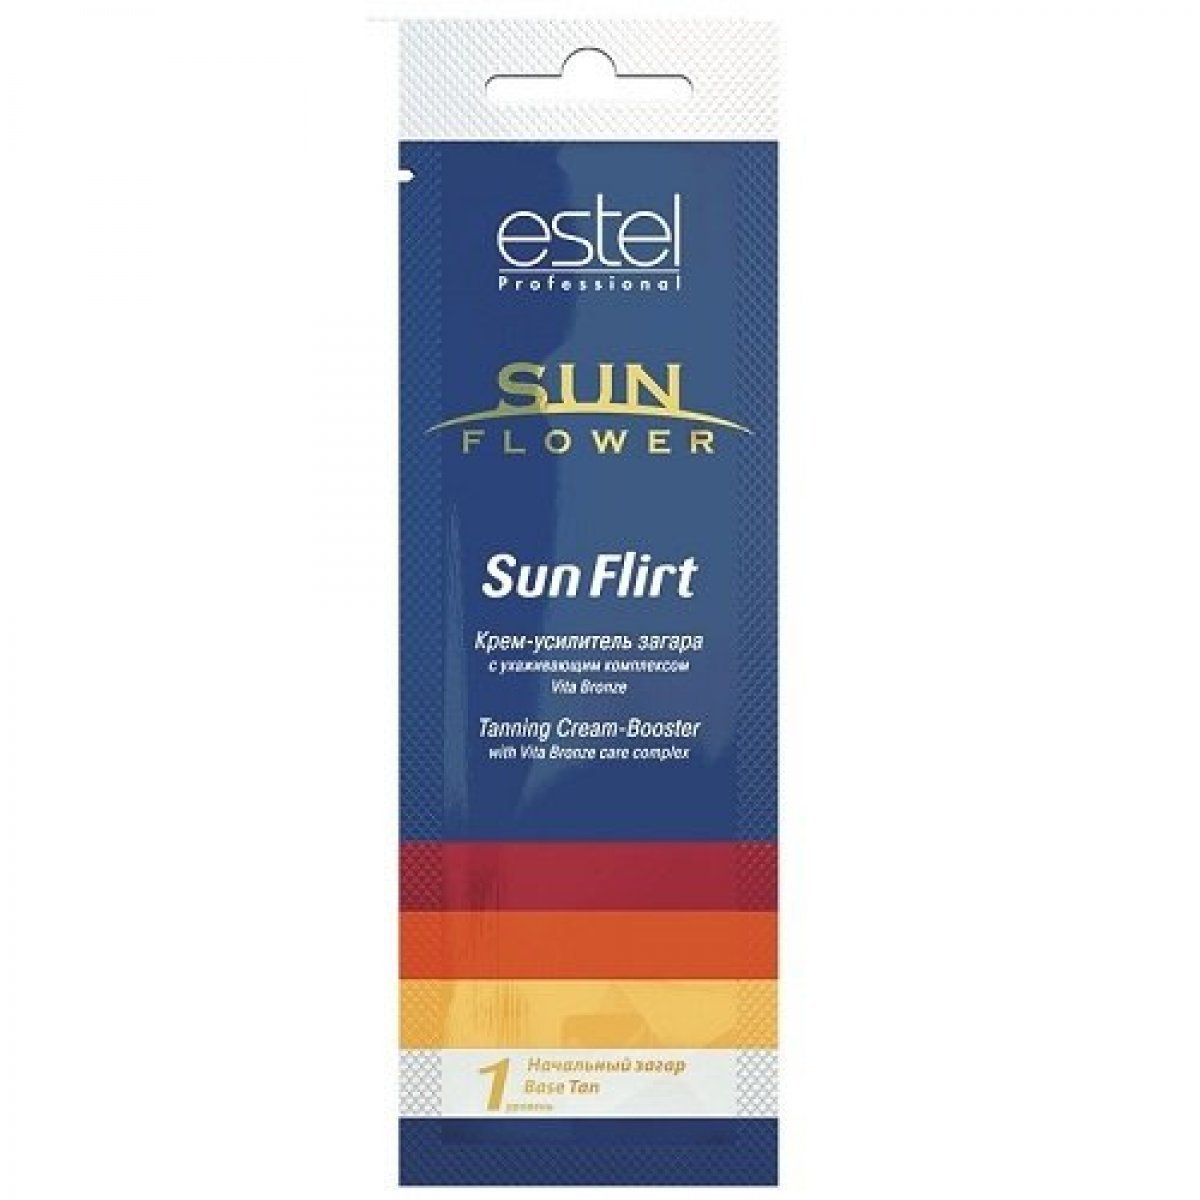 Крем-усилитель загара Estel Professional Sun Flower Sun Flirt